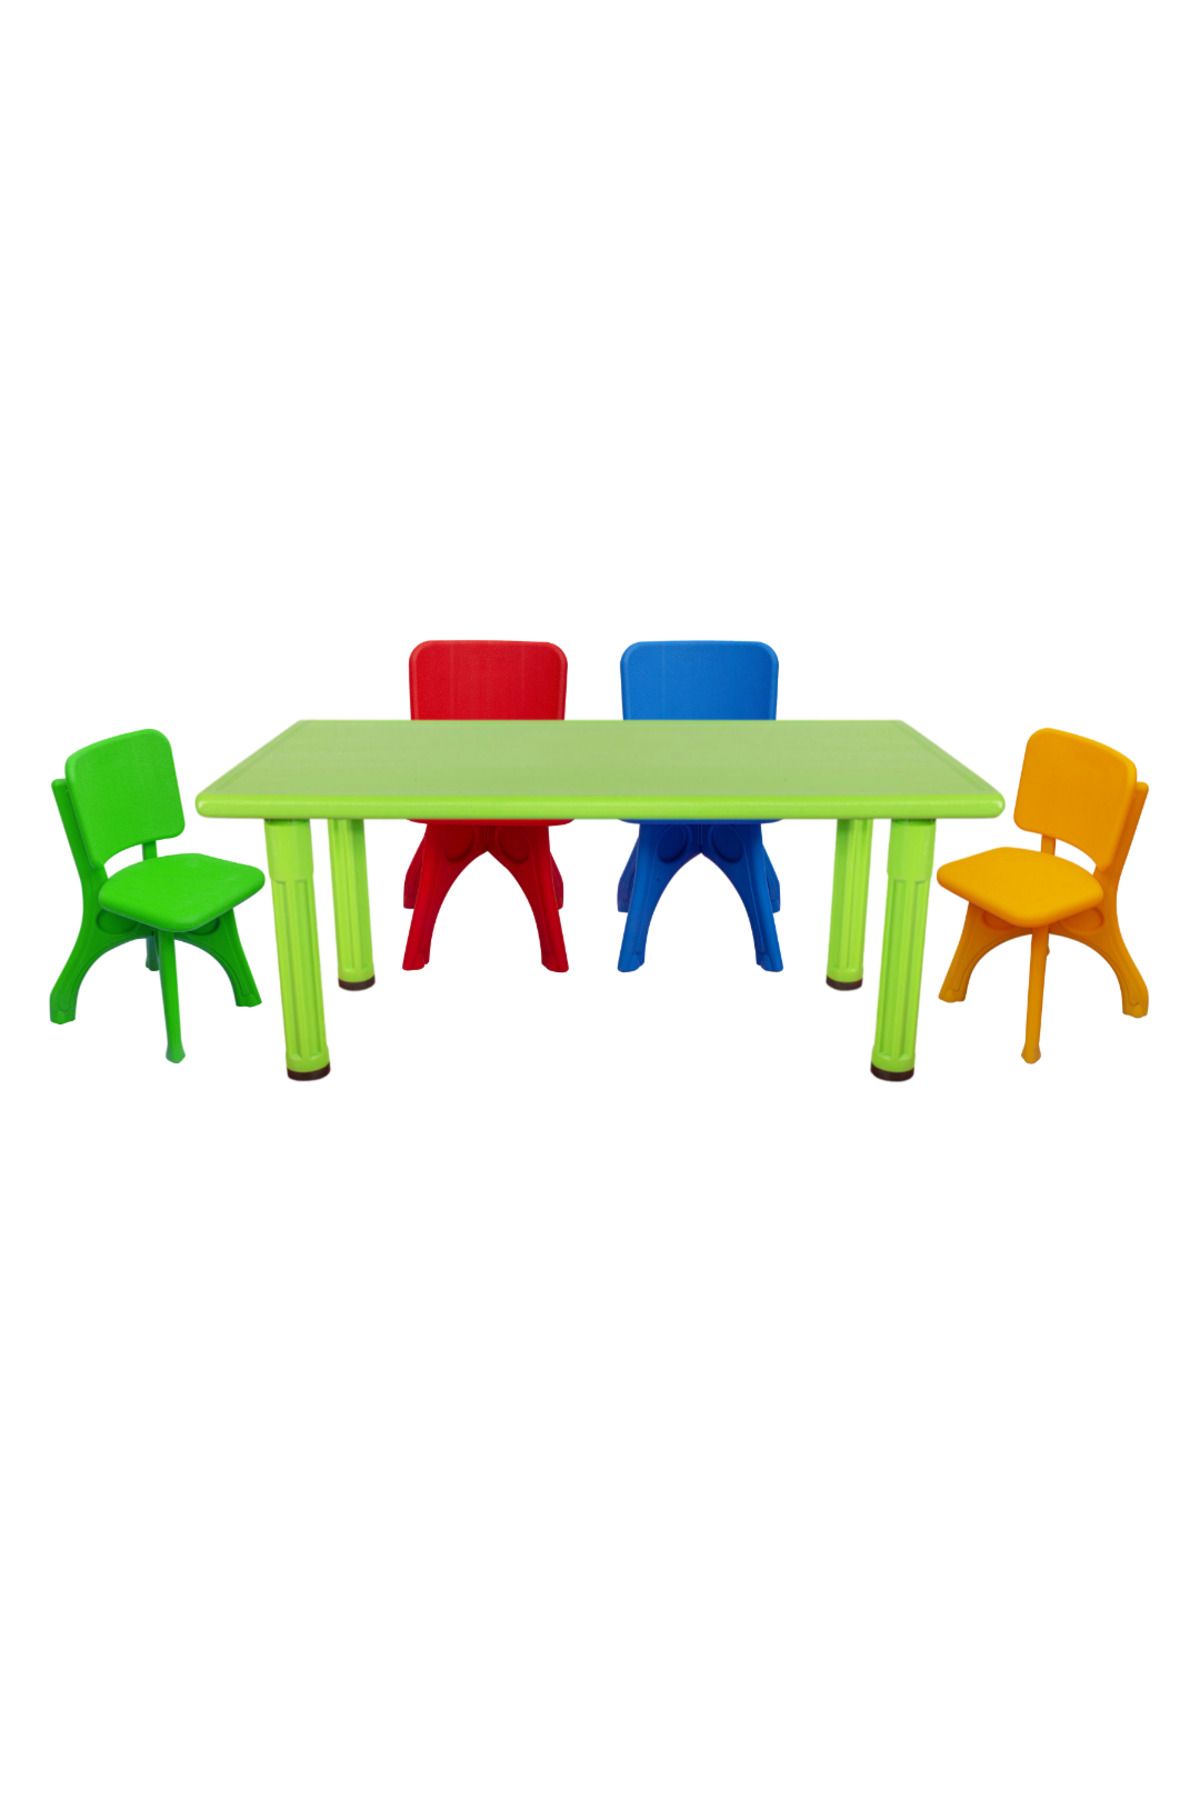 MUPARK Anaokulu - Kreş - Aktivite Masası - 4 Adet Sandalye Set - Çocuk Sandalye - Çocuk Masa - Plastik Ayak